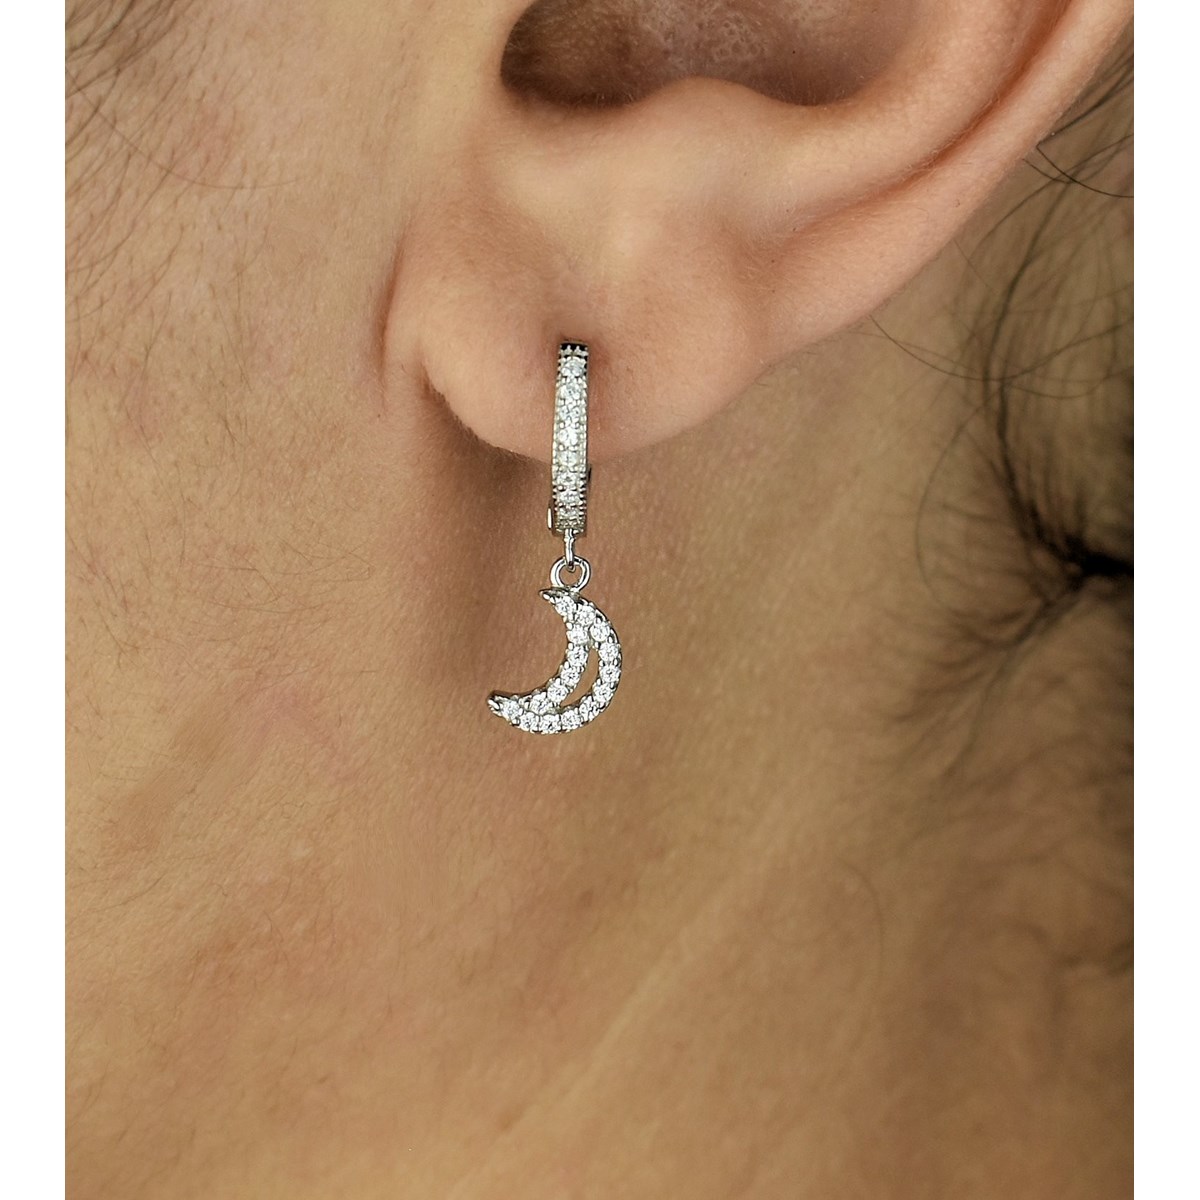 Boucles d'oreilles Mini Créoles lune oxyde de zirconium pendante Argent 925 Rhodié - vue 2